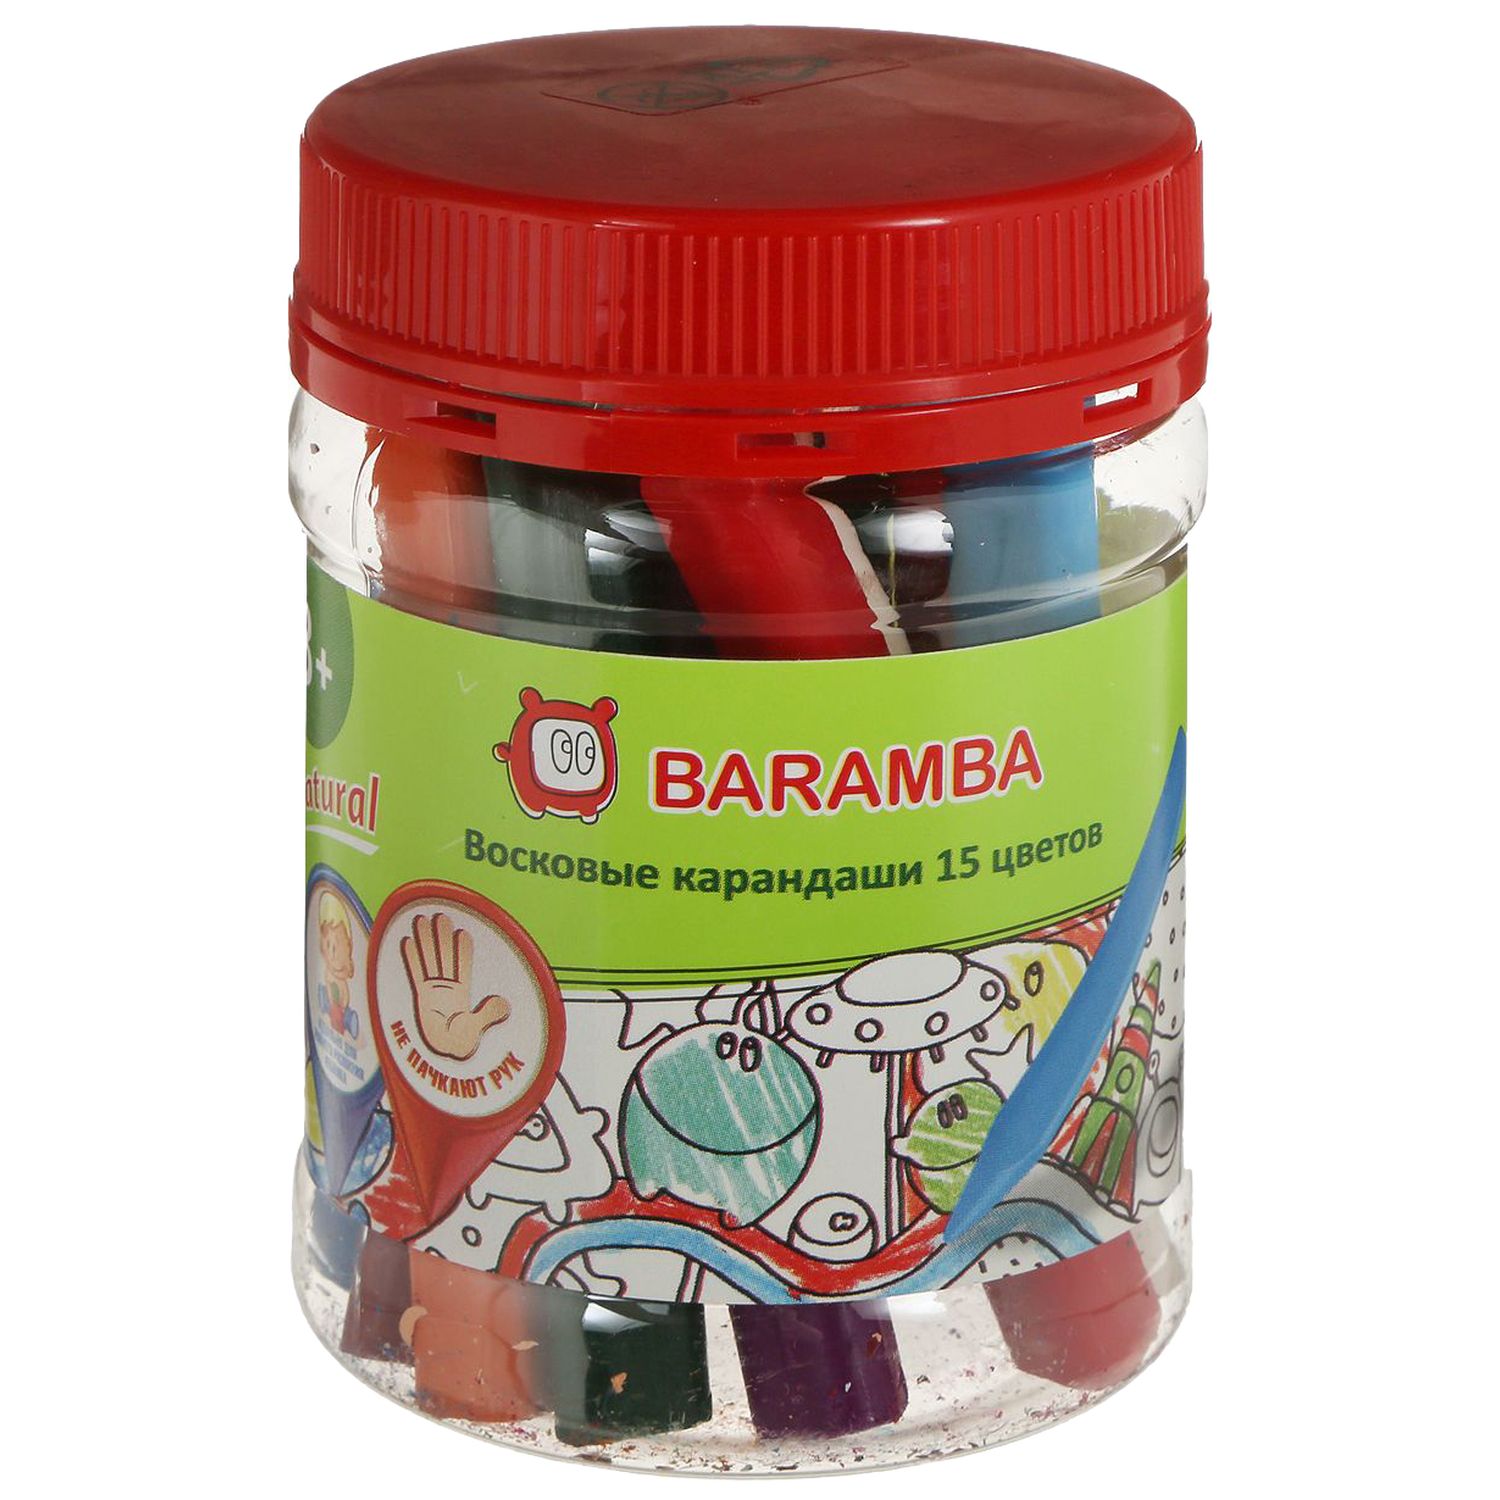 Набор восковых карандашей Baramba треугольные 15 шт./банка+точилка внутри